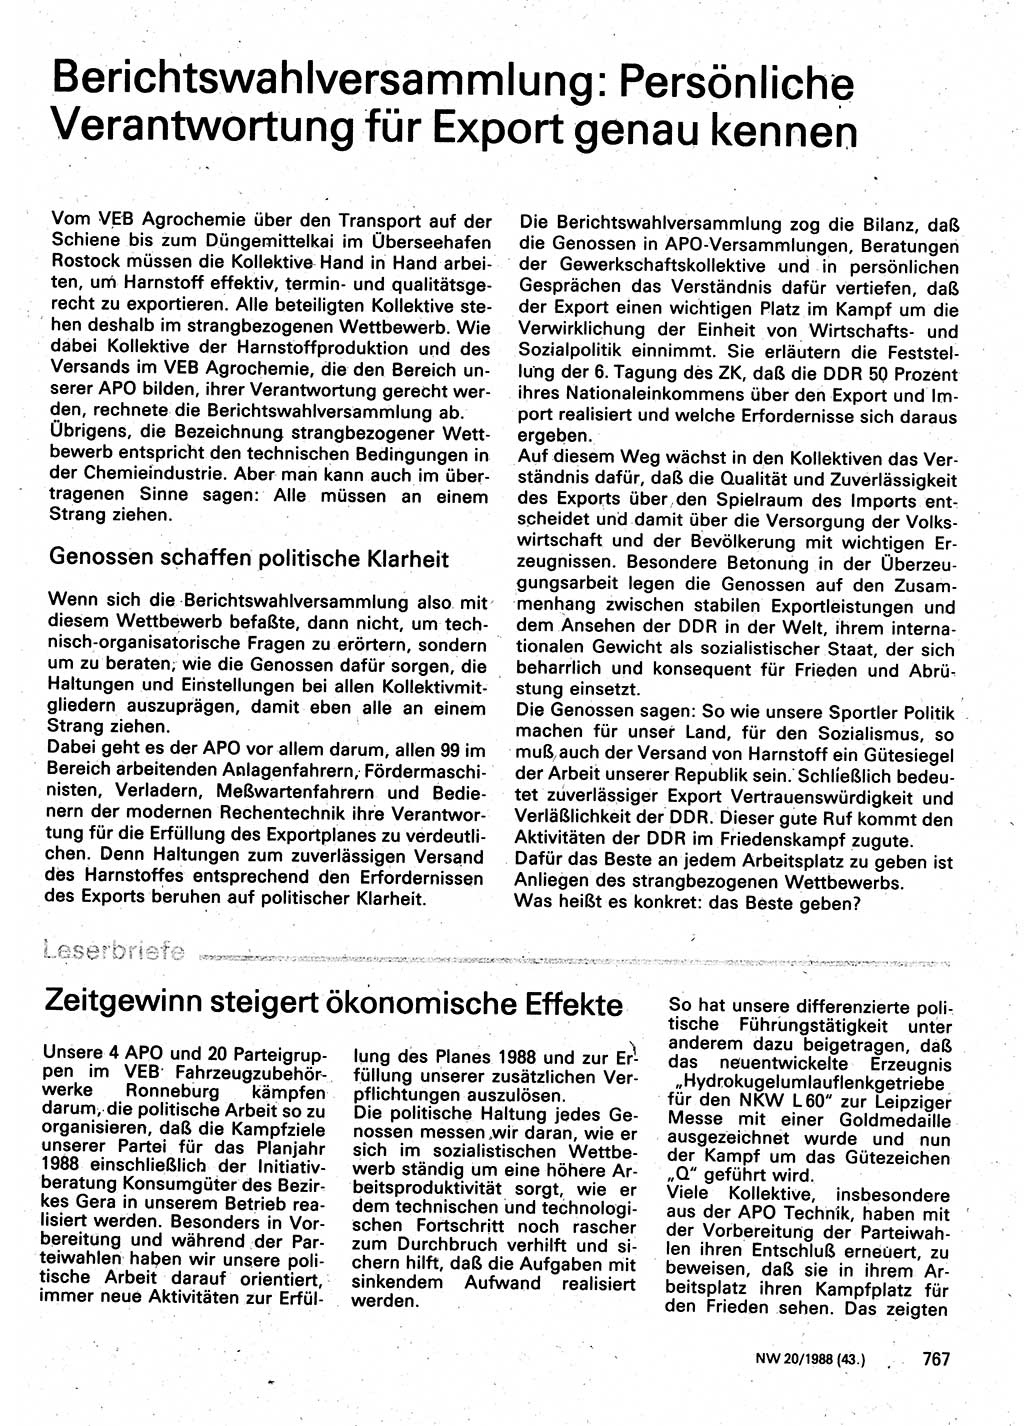 Neuer Weg (NW), Organ des Zentralkomitees (ZK) der SED (Sozialistische Einheitspartei Deutschlands) für Fragen des Parteilebens, 43. Jahrgang [Deutsche Demokratische Republik (DDR)] 1988, Seite 767 (NW ZK SED DDR 1988, S. 767)